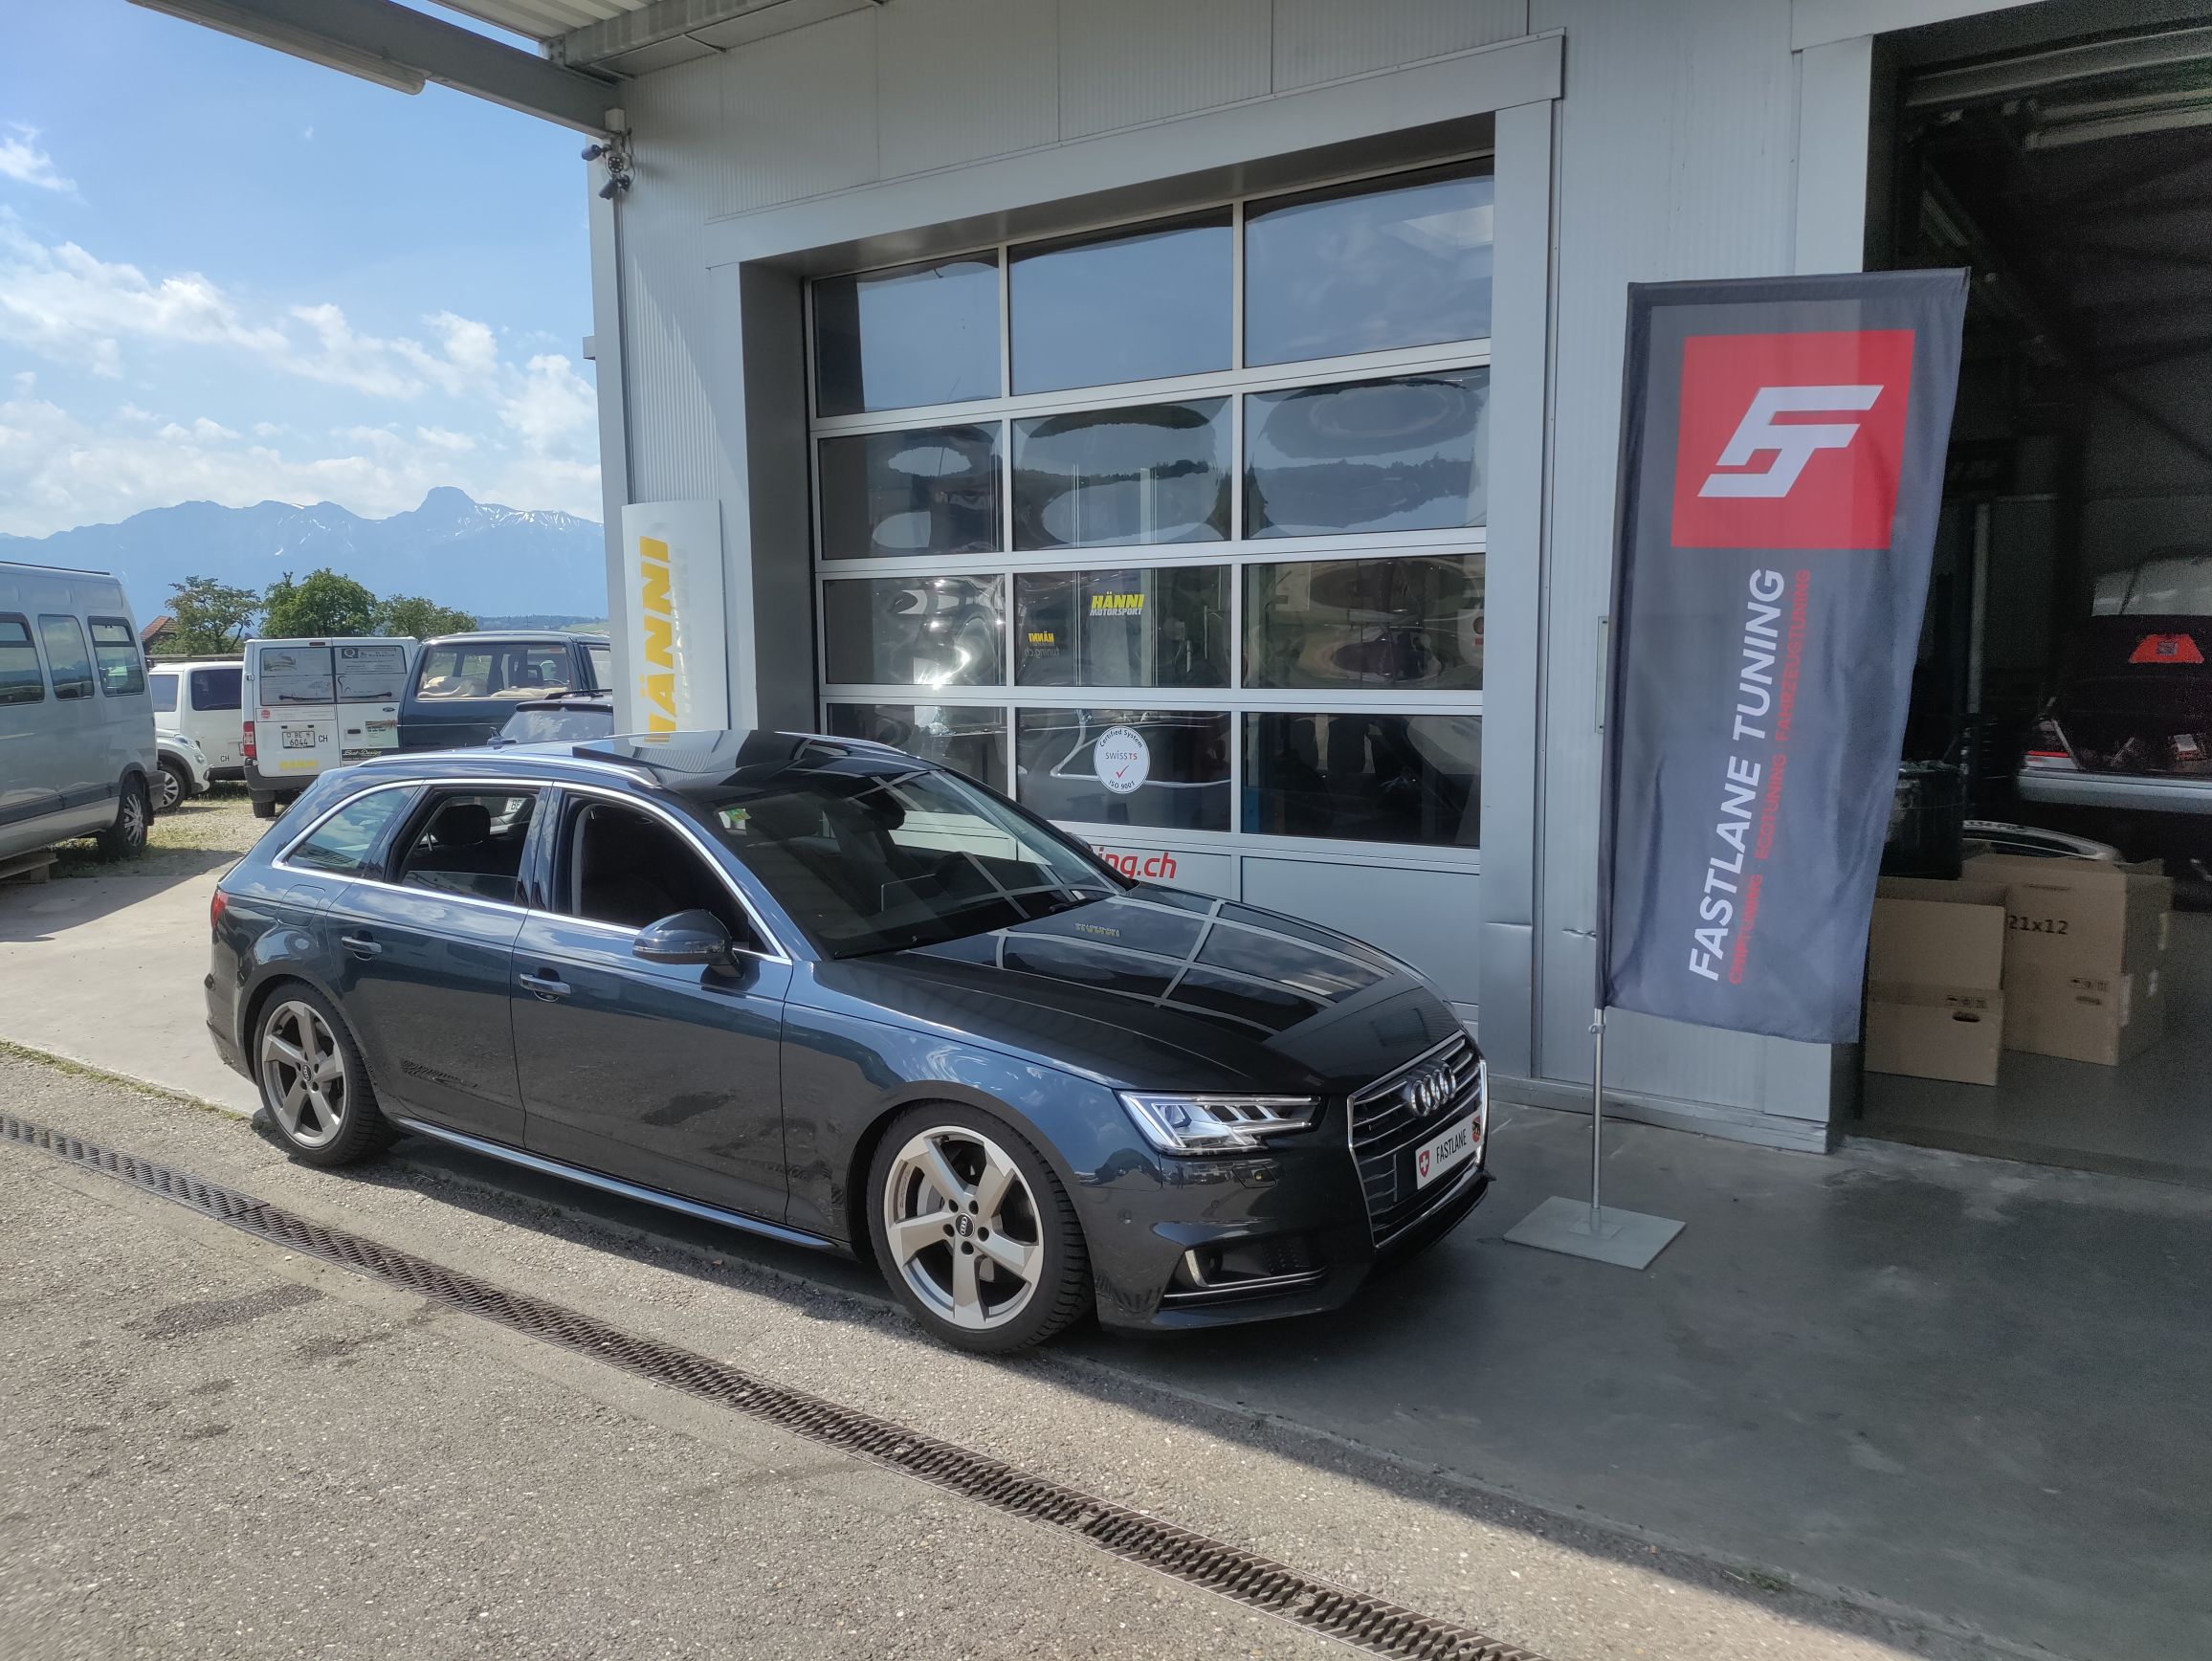 Ein dunkelgrauer Audi A6 3.0 V6 TDI Kombi steht vor der Garage neben der Fastlane Tuning Schweiz Flagge